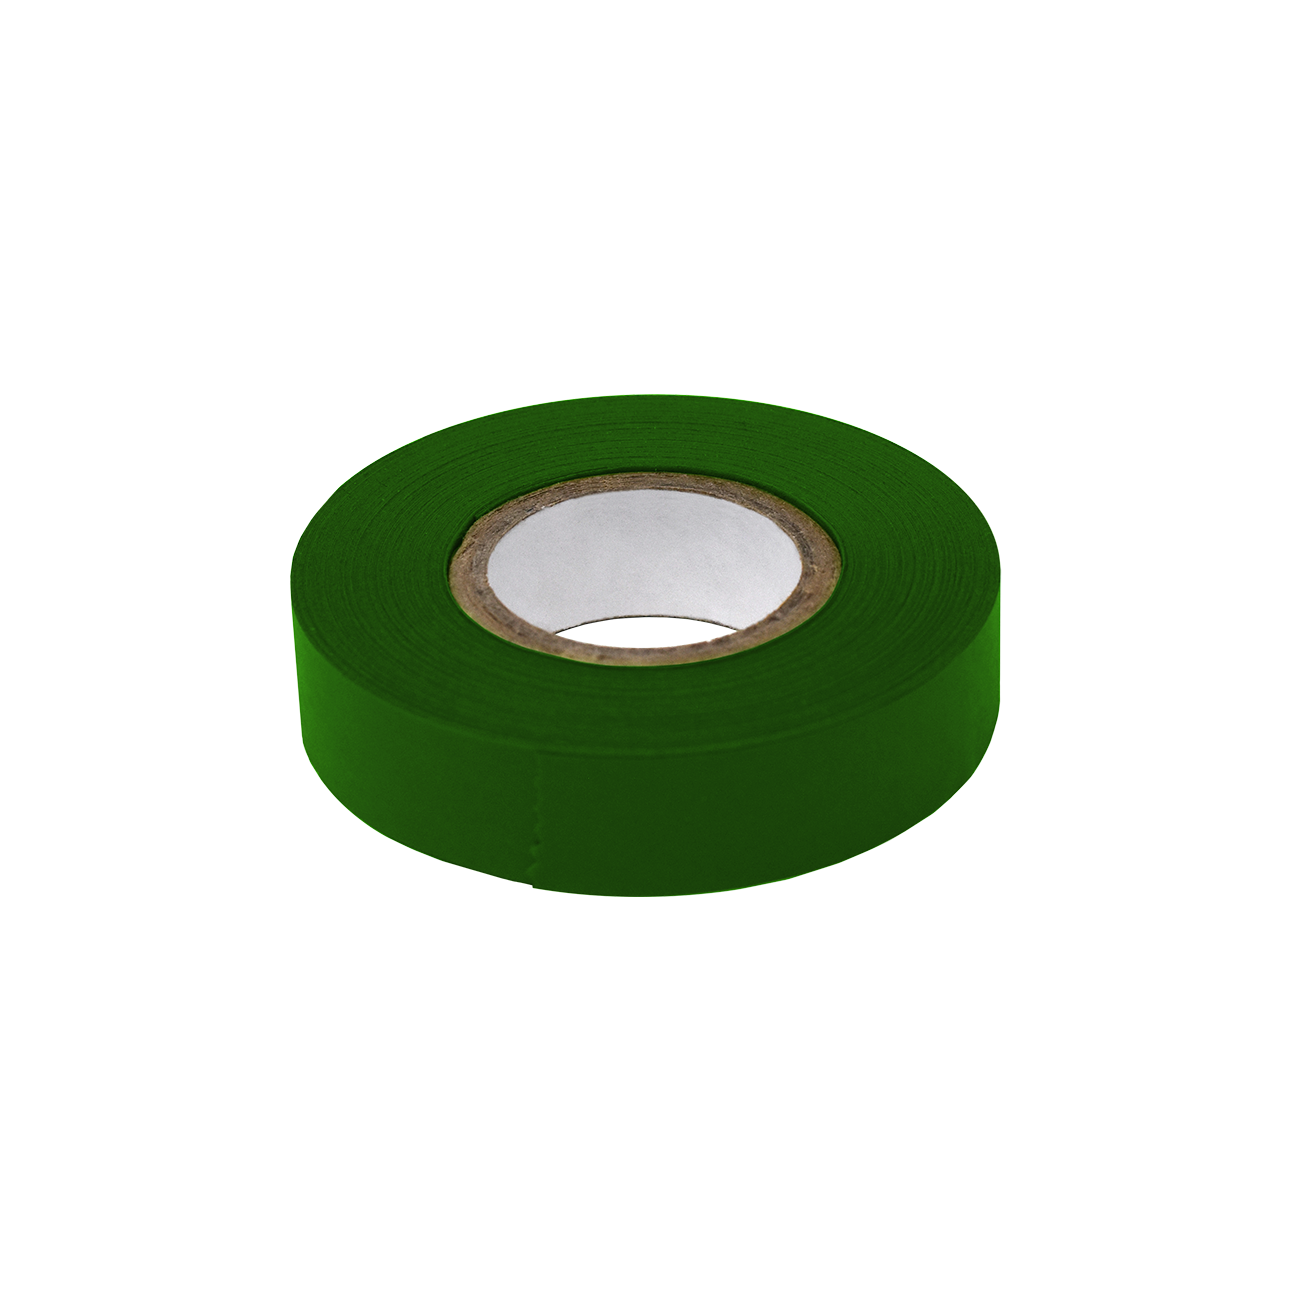 Globe Scientific Labeling Tape, 1/2" x 500" per Roll, 6 Rolls/Box, Dark Green 